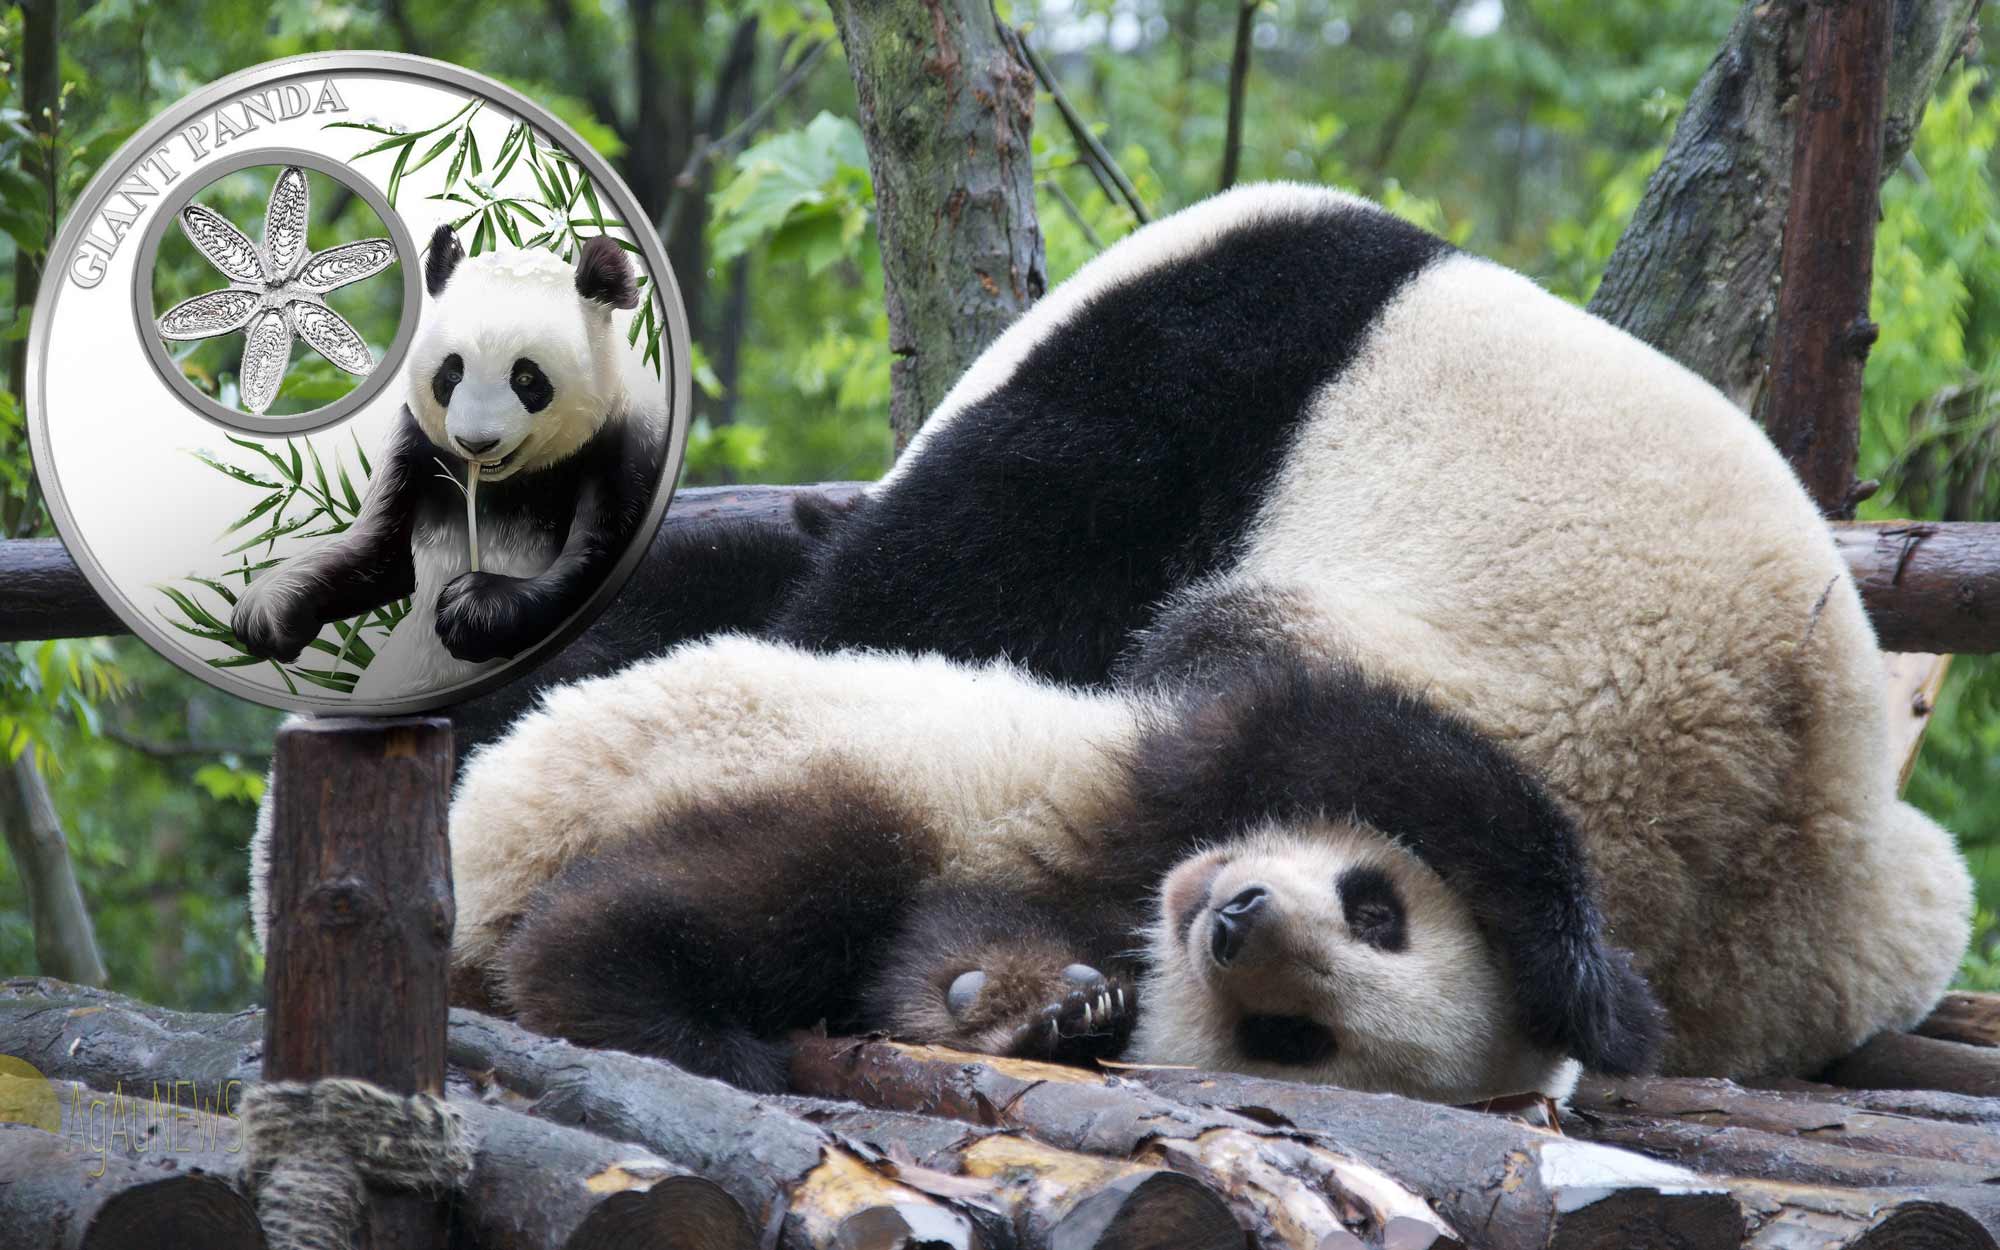 Into_the_panda